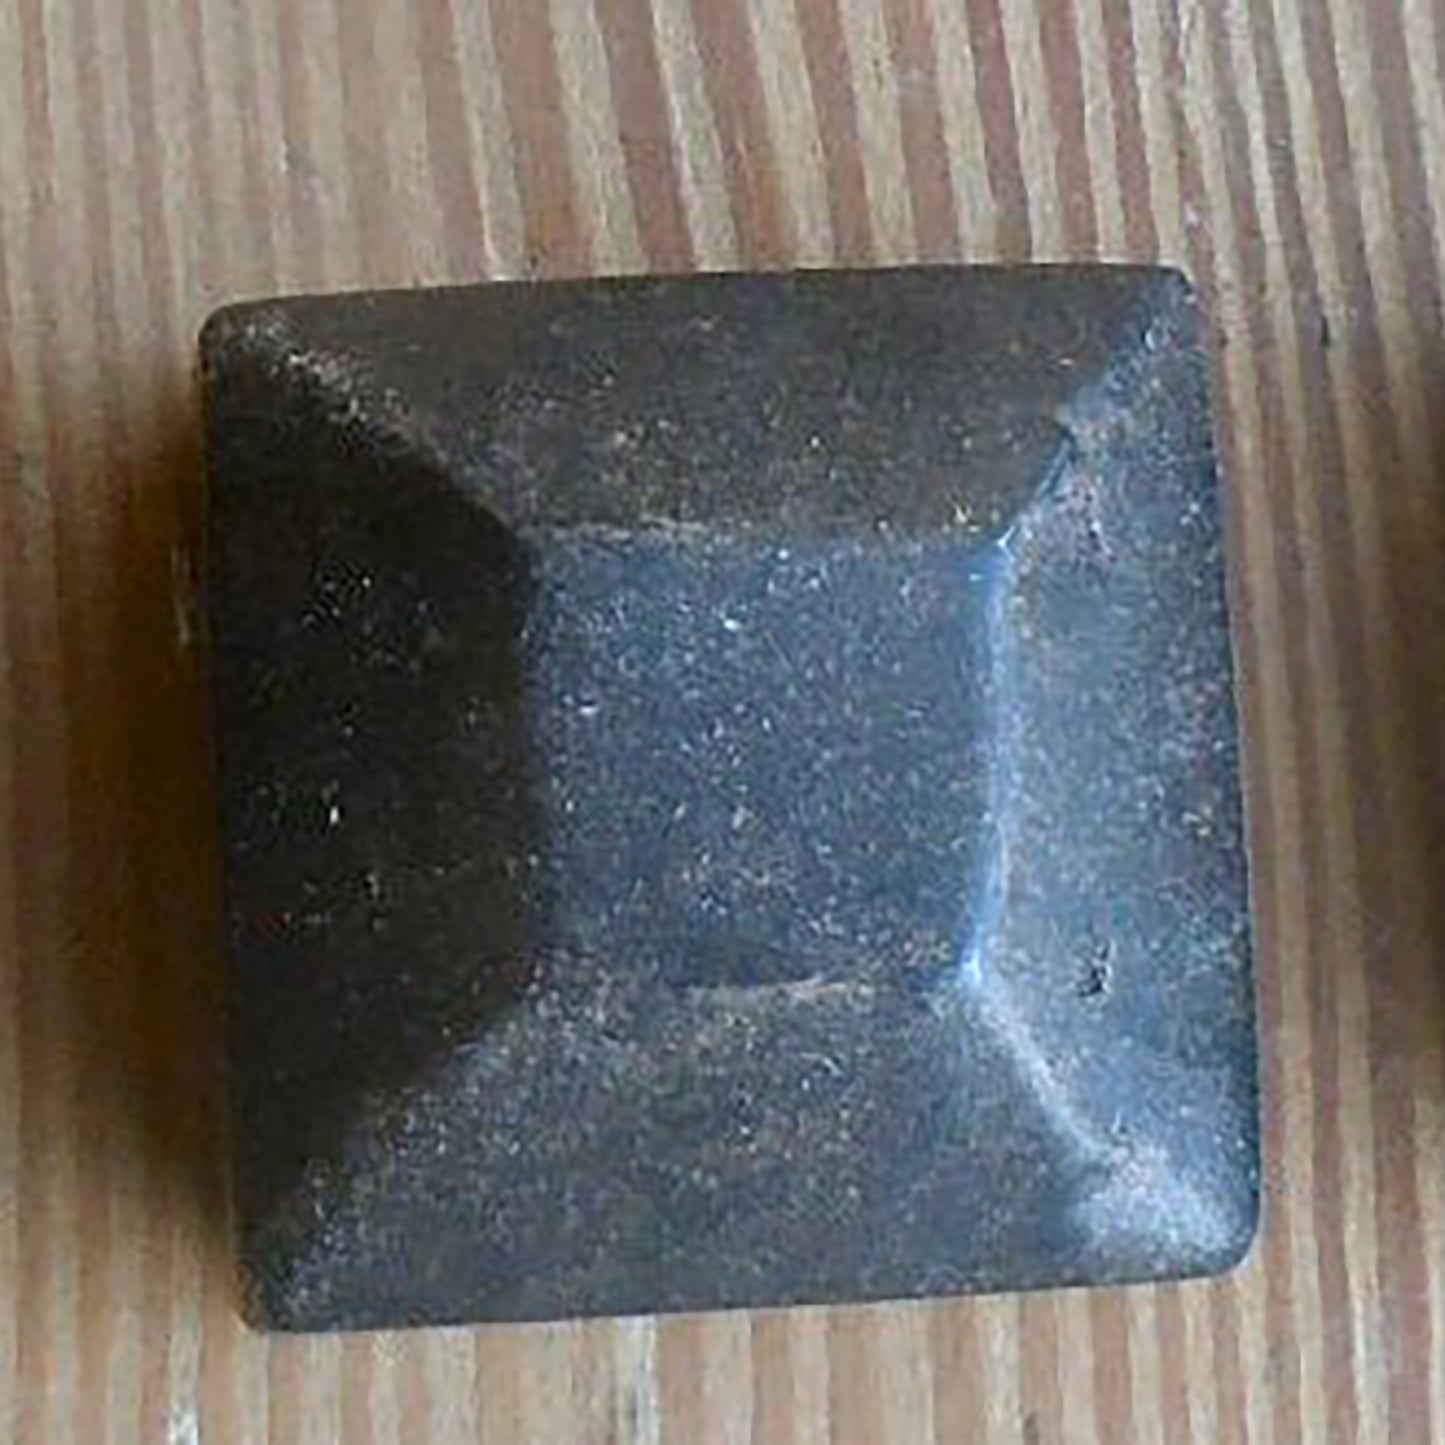 1" Square Cap Nut - Pyramid